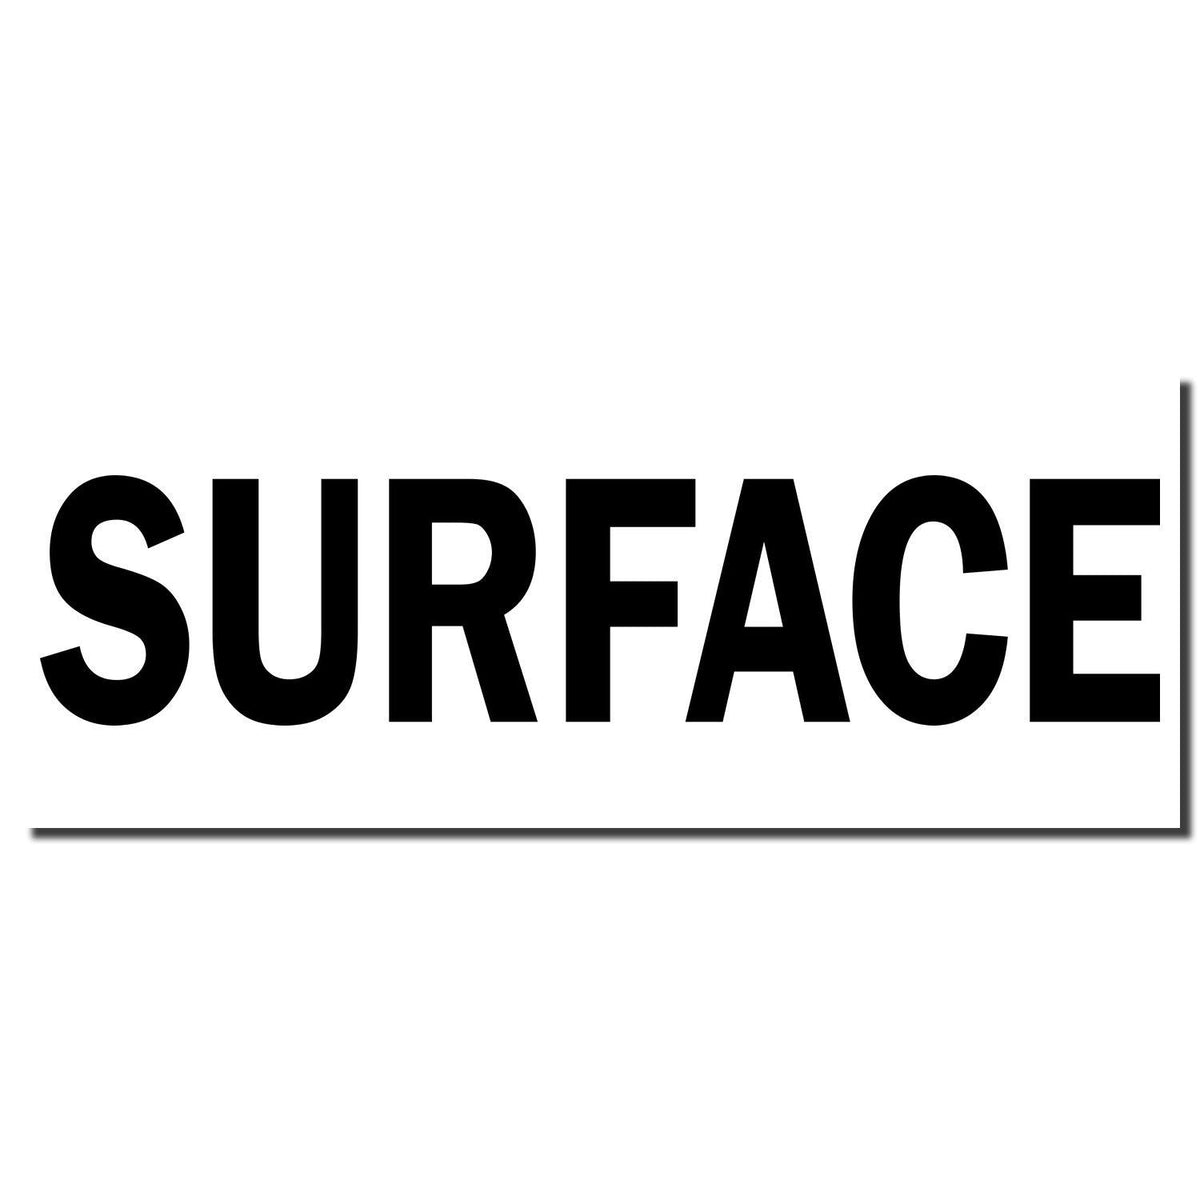 Enlarged Imprint Surface Rubber Stamp Sample